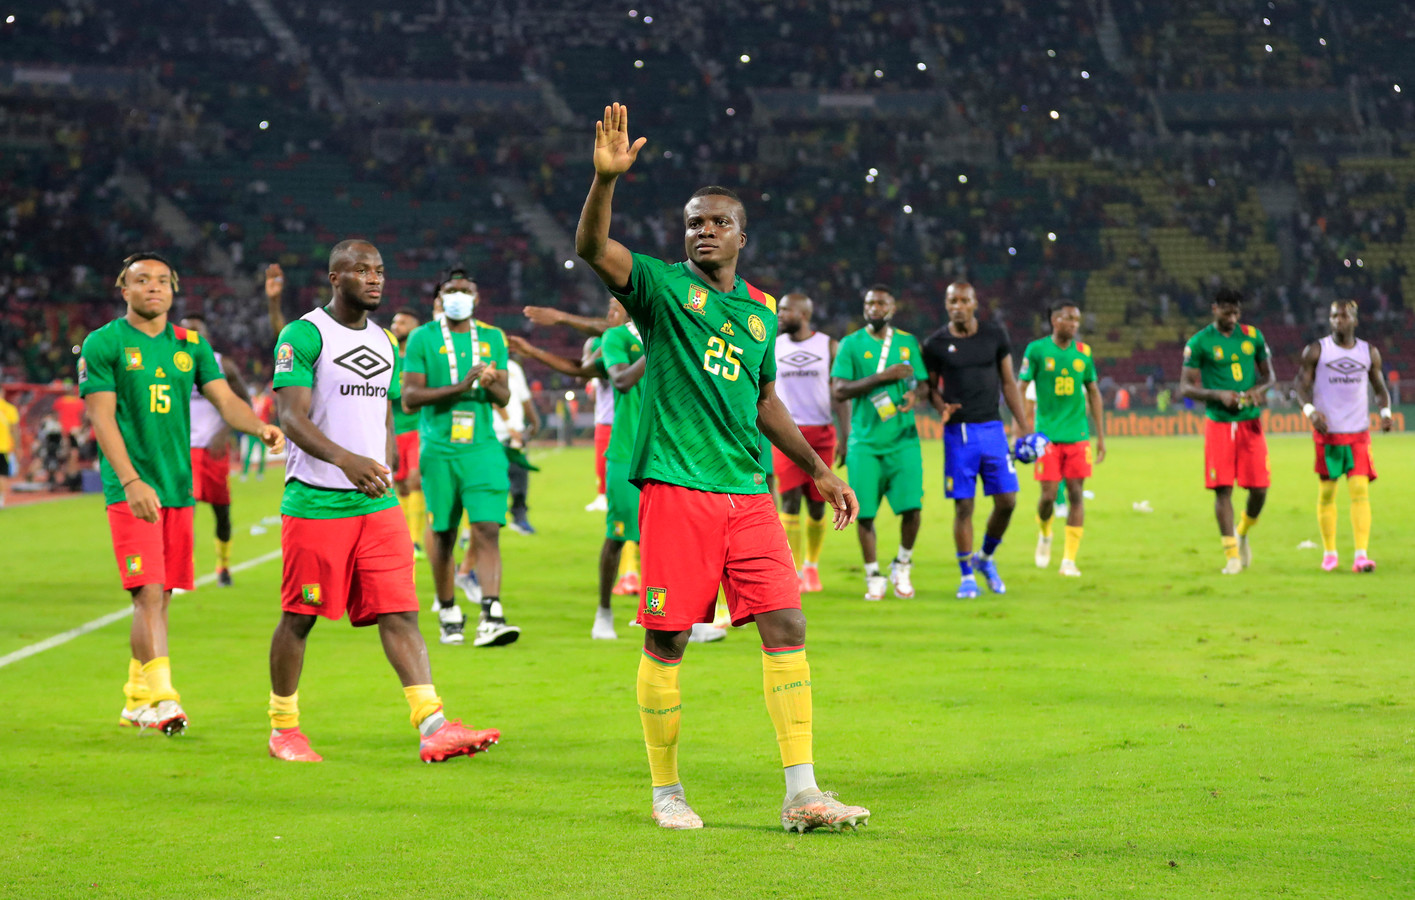 Nouhou Tolo du Cameroun célèbre après le match Cameroun - Burkina Faso, Coupe d'Afrique des Nations, 9 janvier 2022.